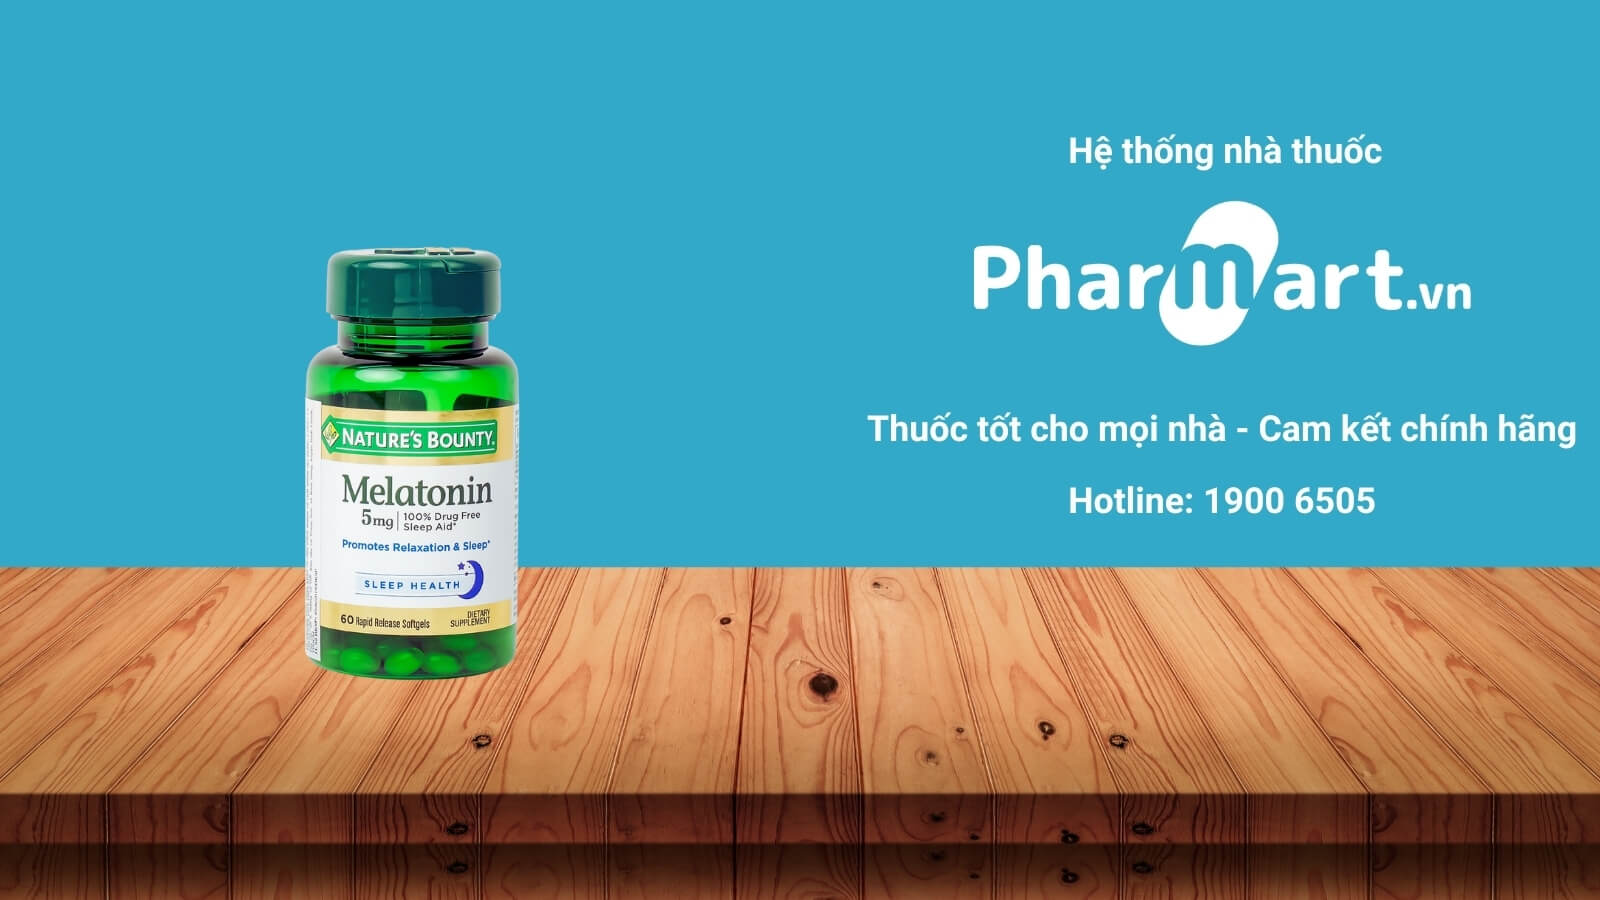 Mua Melatonin Nature’s Bounty chính hãng tại Pharmart.vn 